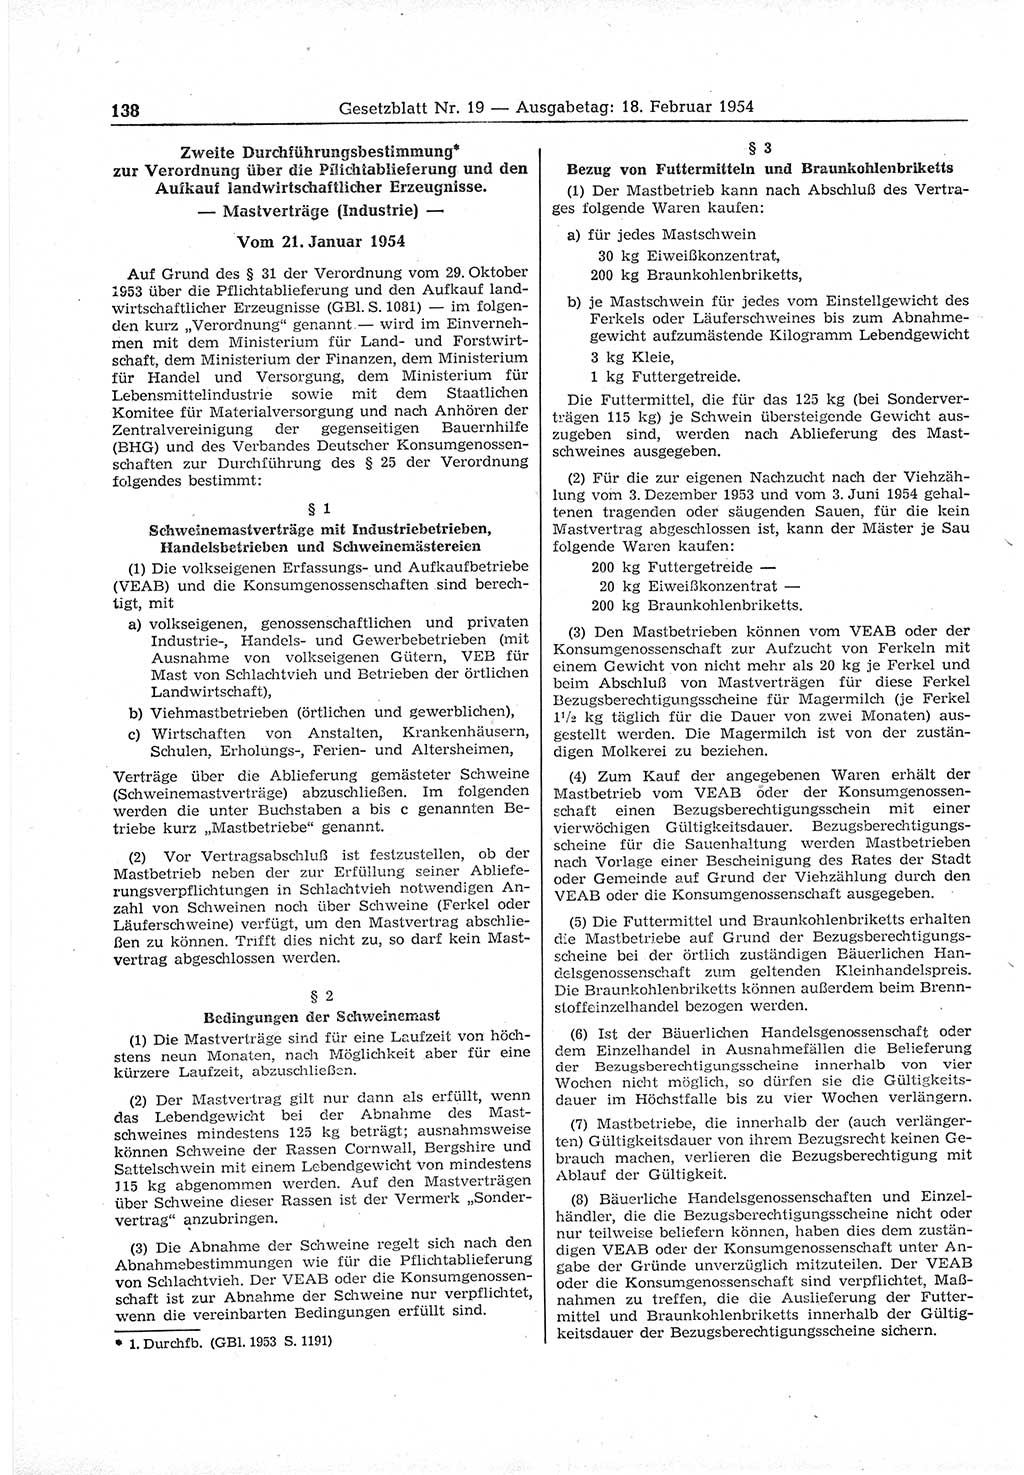 Gesetzblatt (GBl.) der Deutschen Demokratischen Republik (DDR) 1954, Seite 138 (GBl. DDR 1954, S. 138)